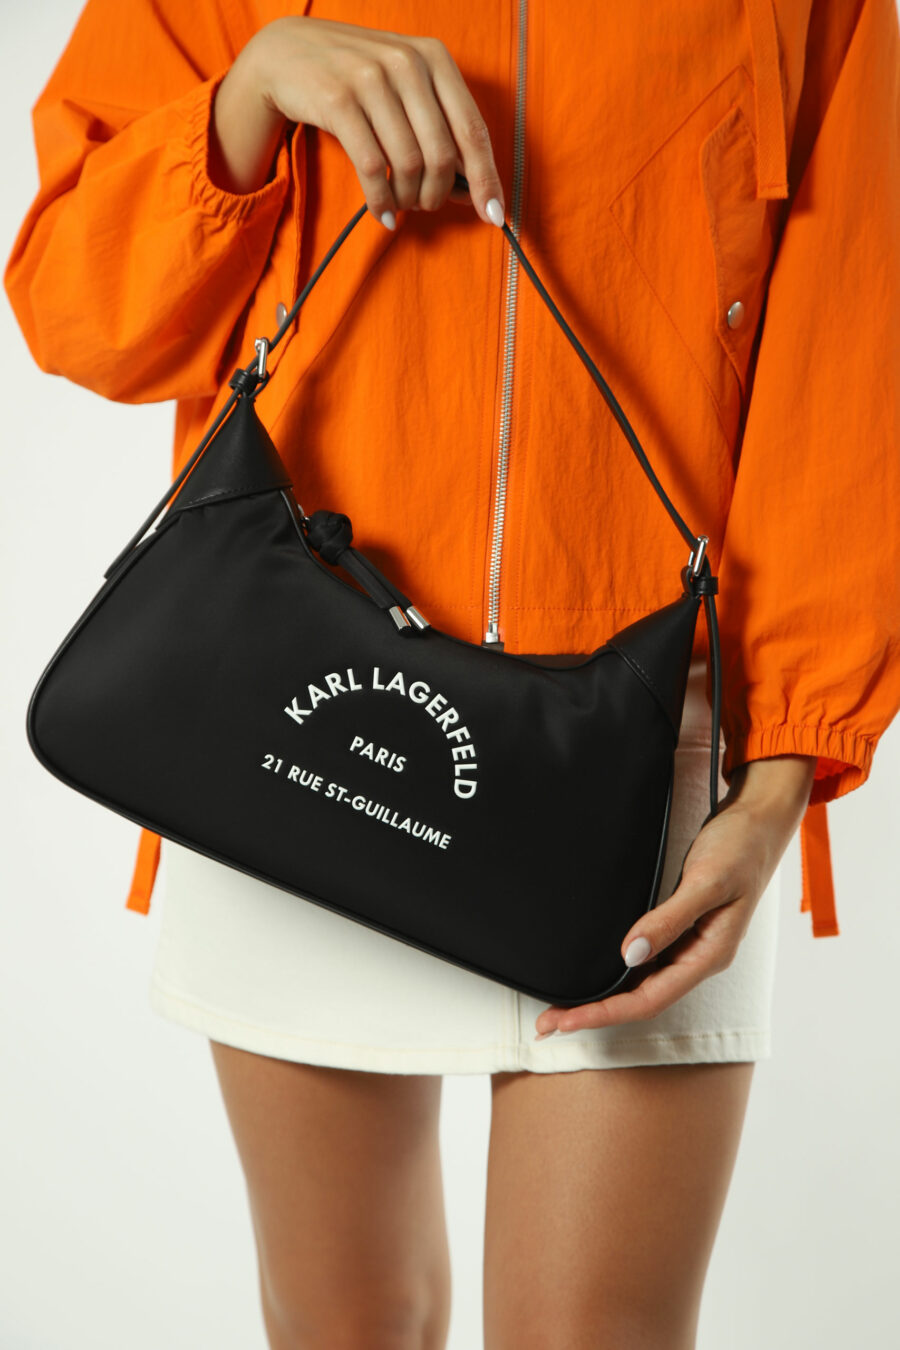 Black shoulder bag with "rue st guillaume" logo - Photos 1381